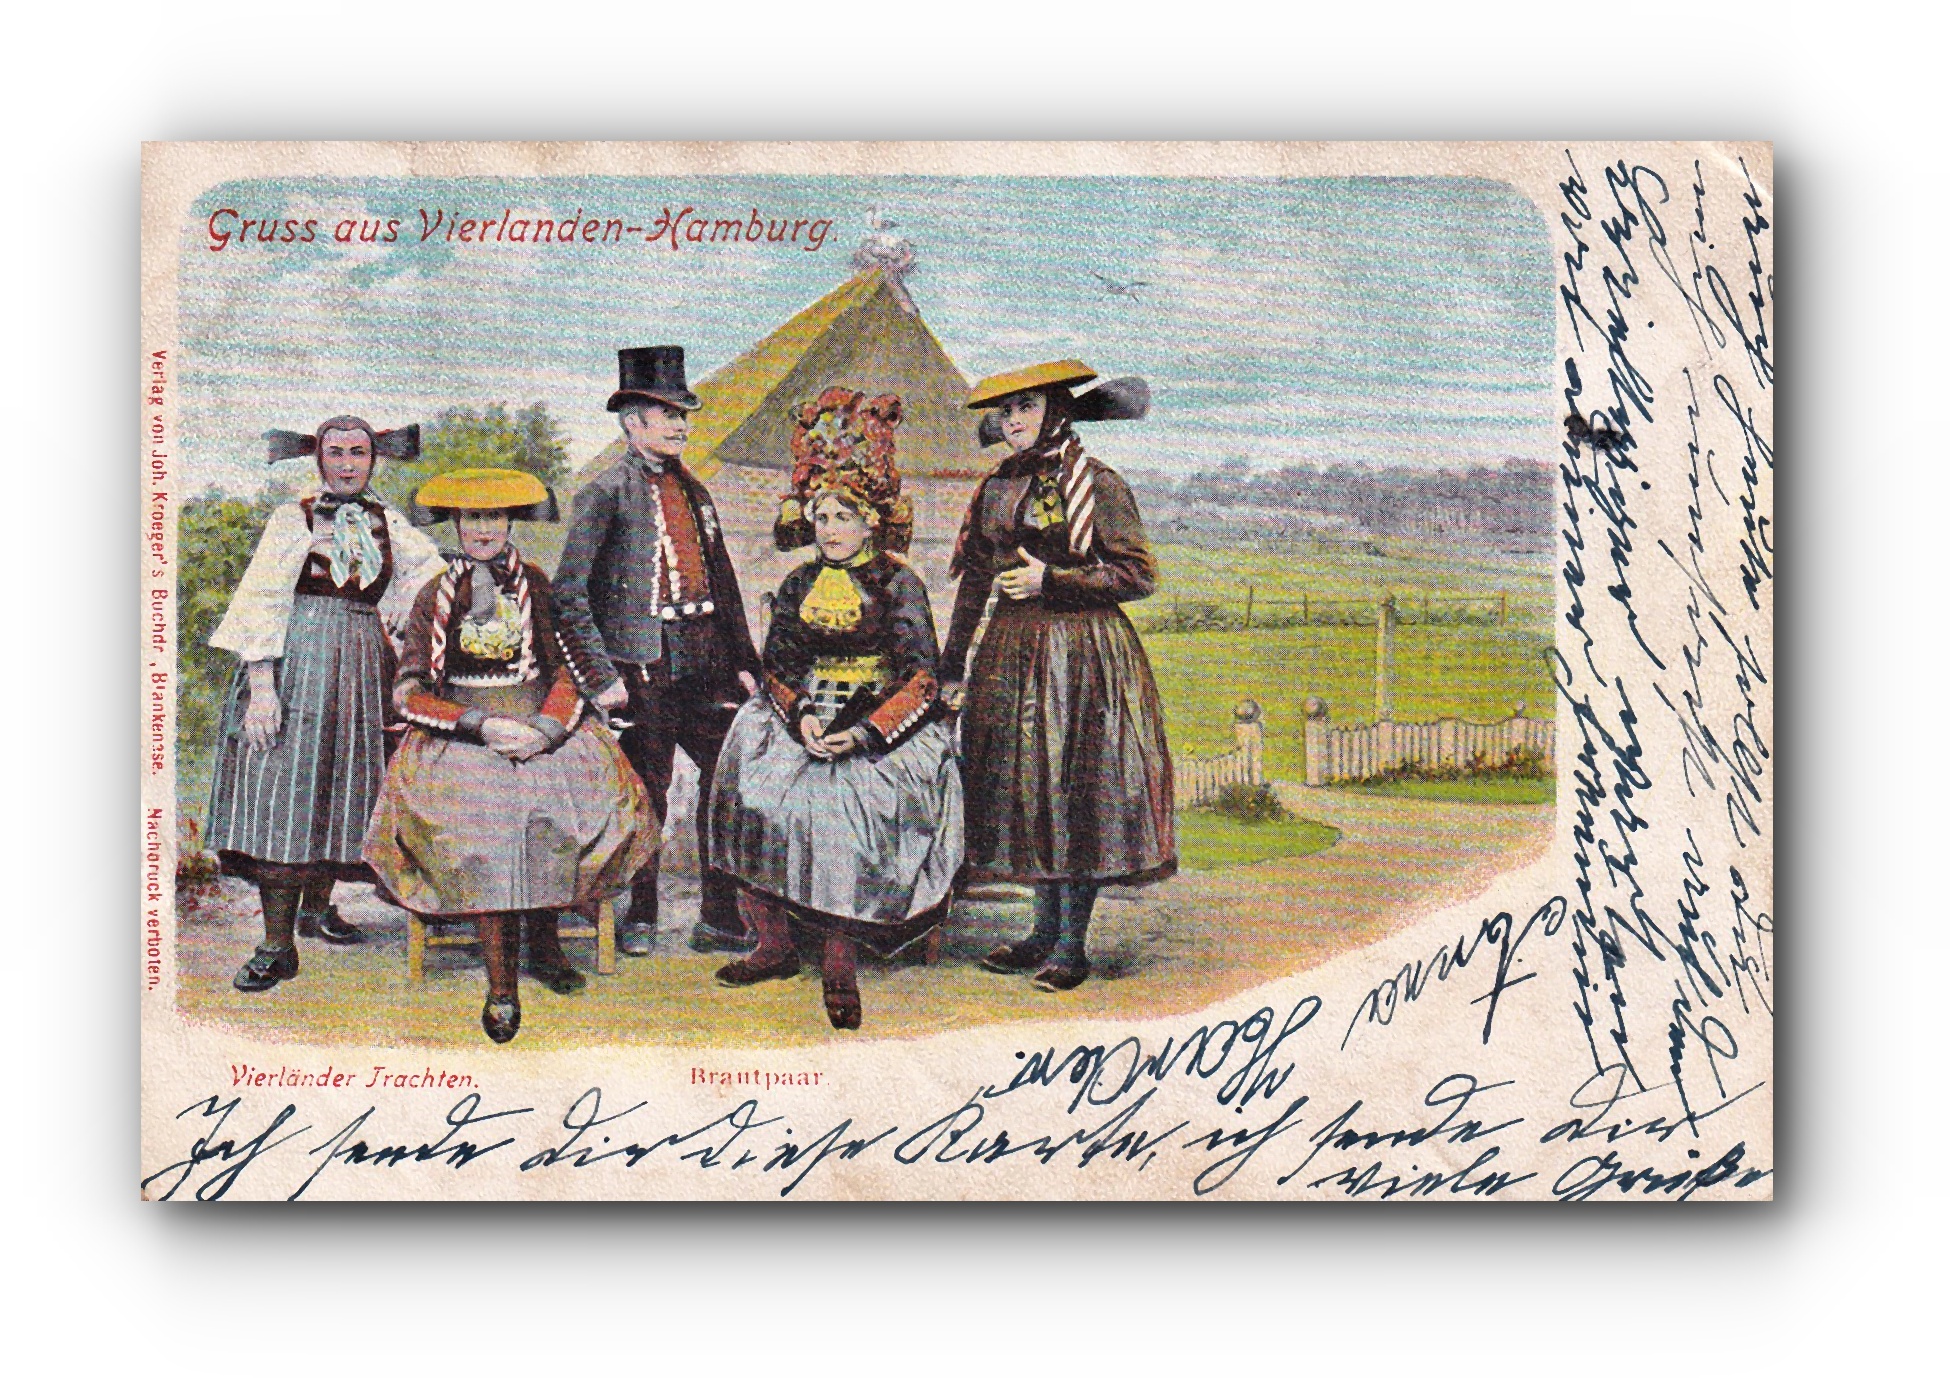 Gruss aus VIERLANDEN - 26.07.1900 - Bonjour de Vierlanden - Greetings from Vierlanden